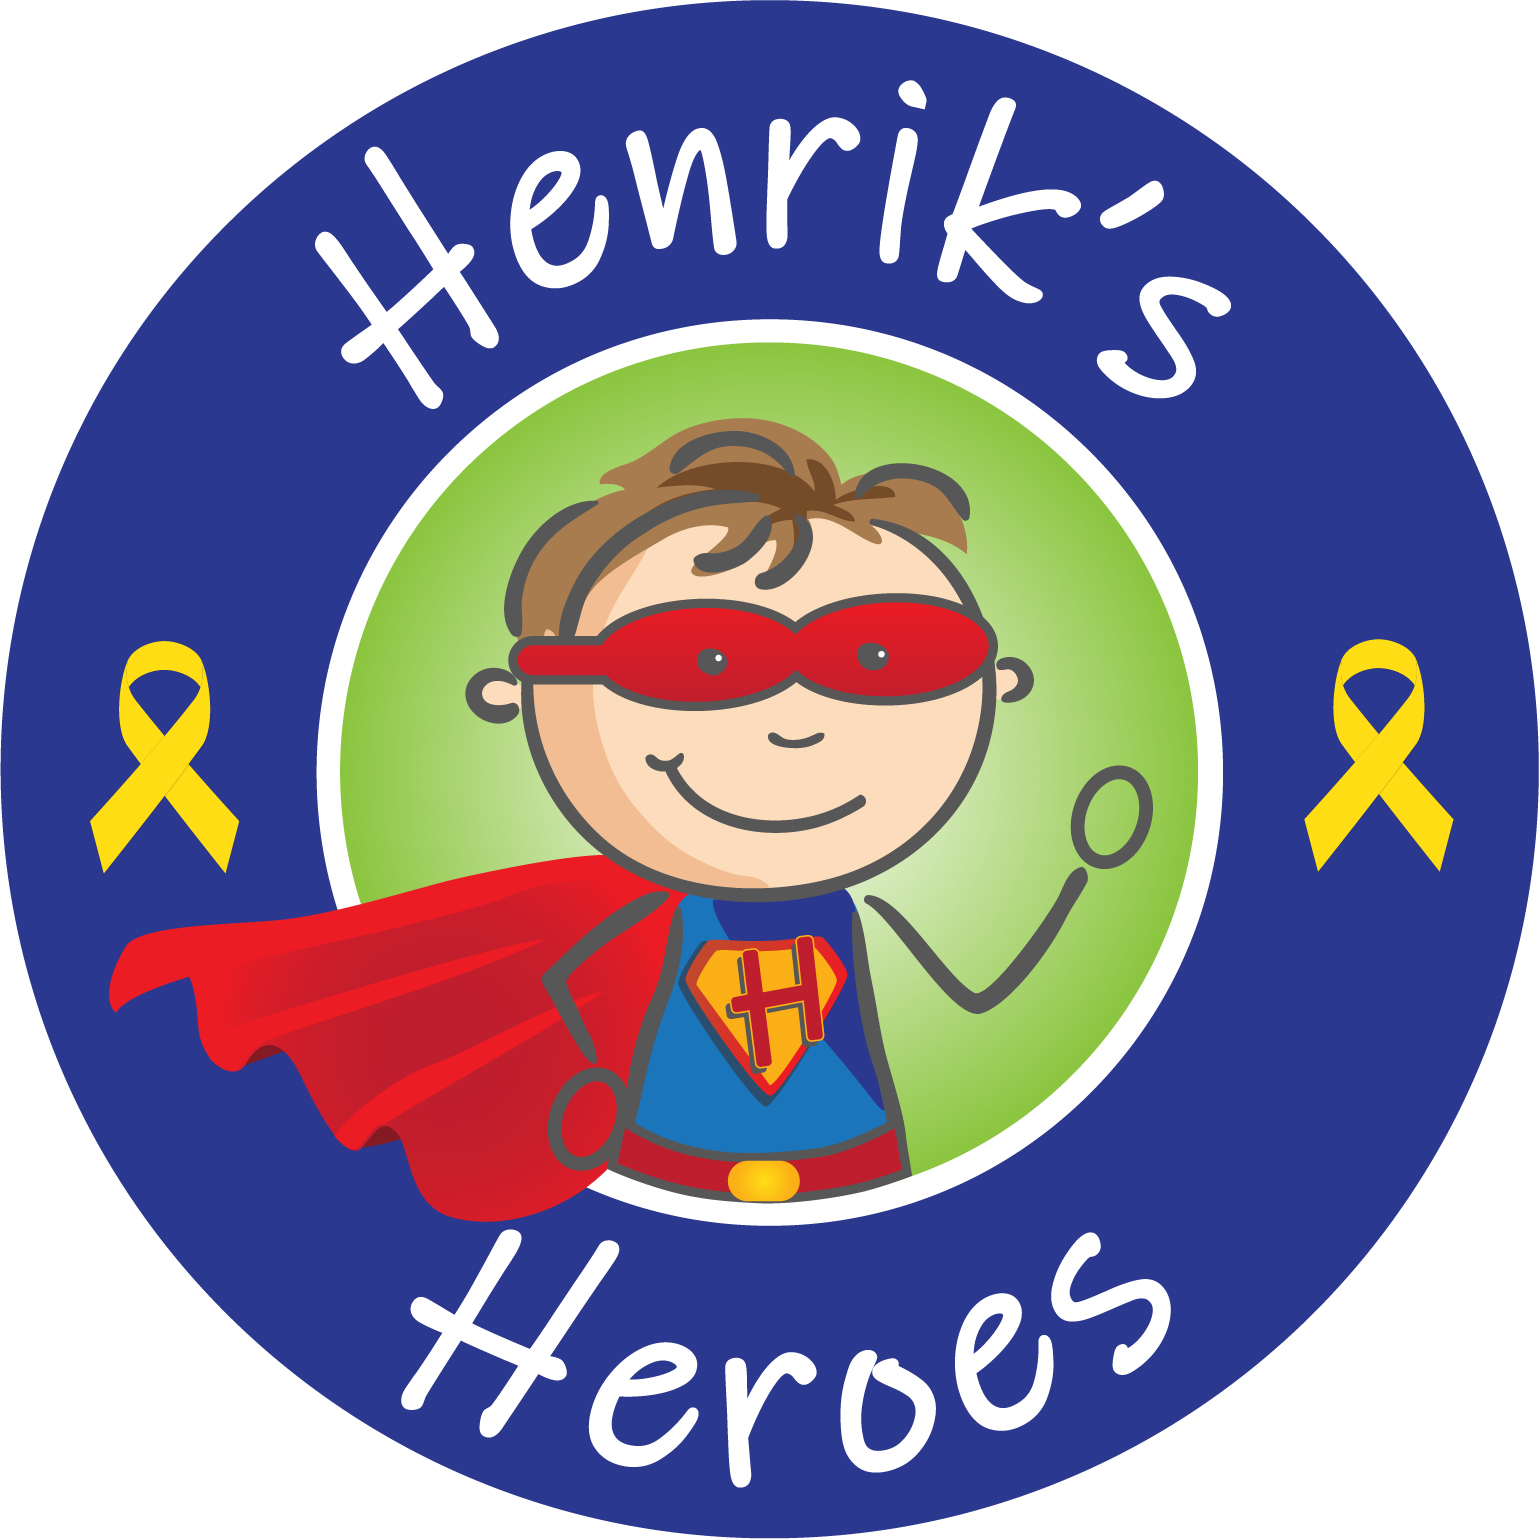 https://www.visionbanks.com/wp-content/uploads/Henriks-Heroes.jpg